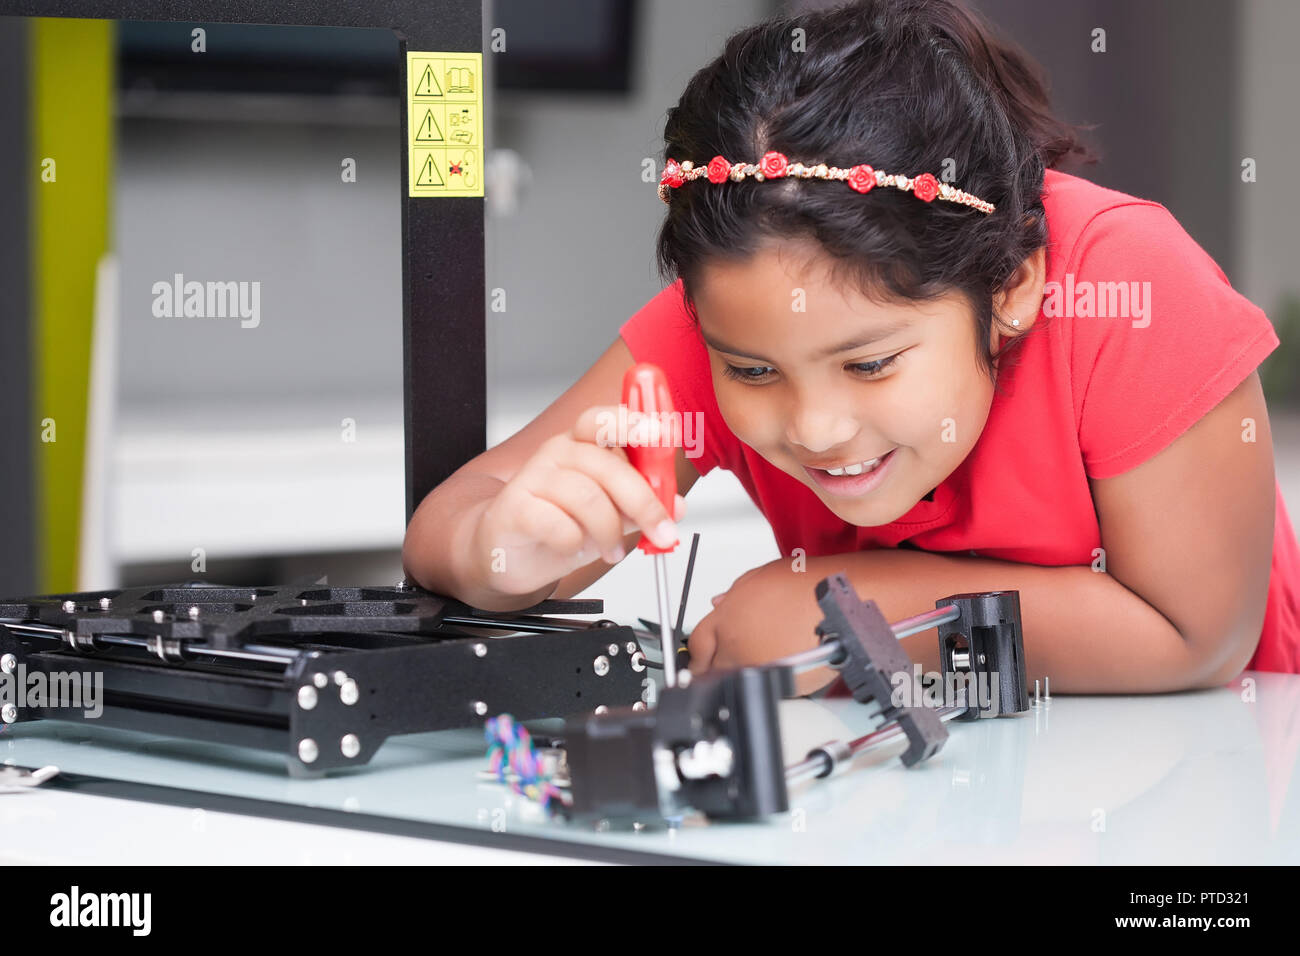 Niveau d'apprentissage à propos de Genius kid imprimantes 3D par le construire et suivant les instructions de la classe de la tige Banque D'Images